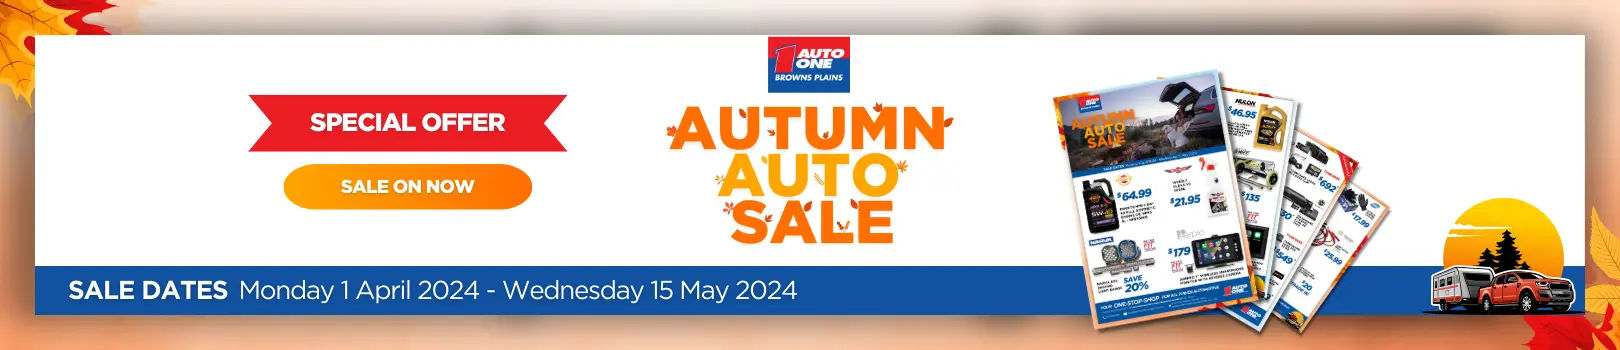 Autumn Auto Sale at Auto One Browns Plains.